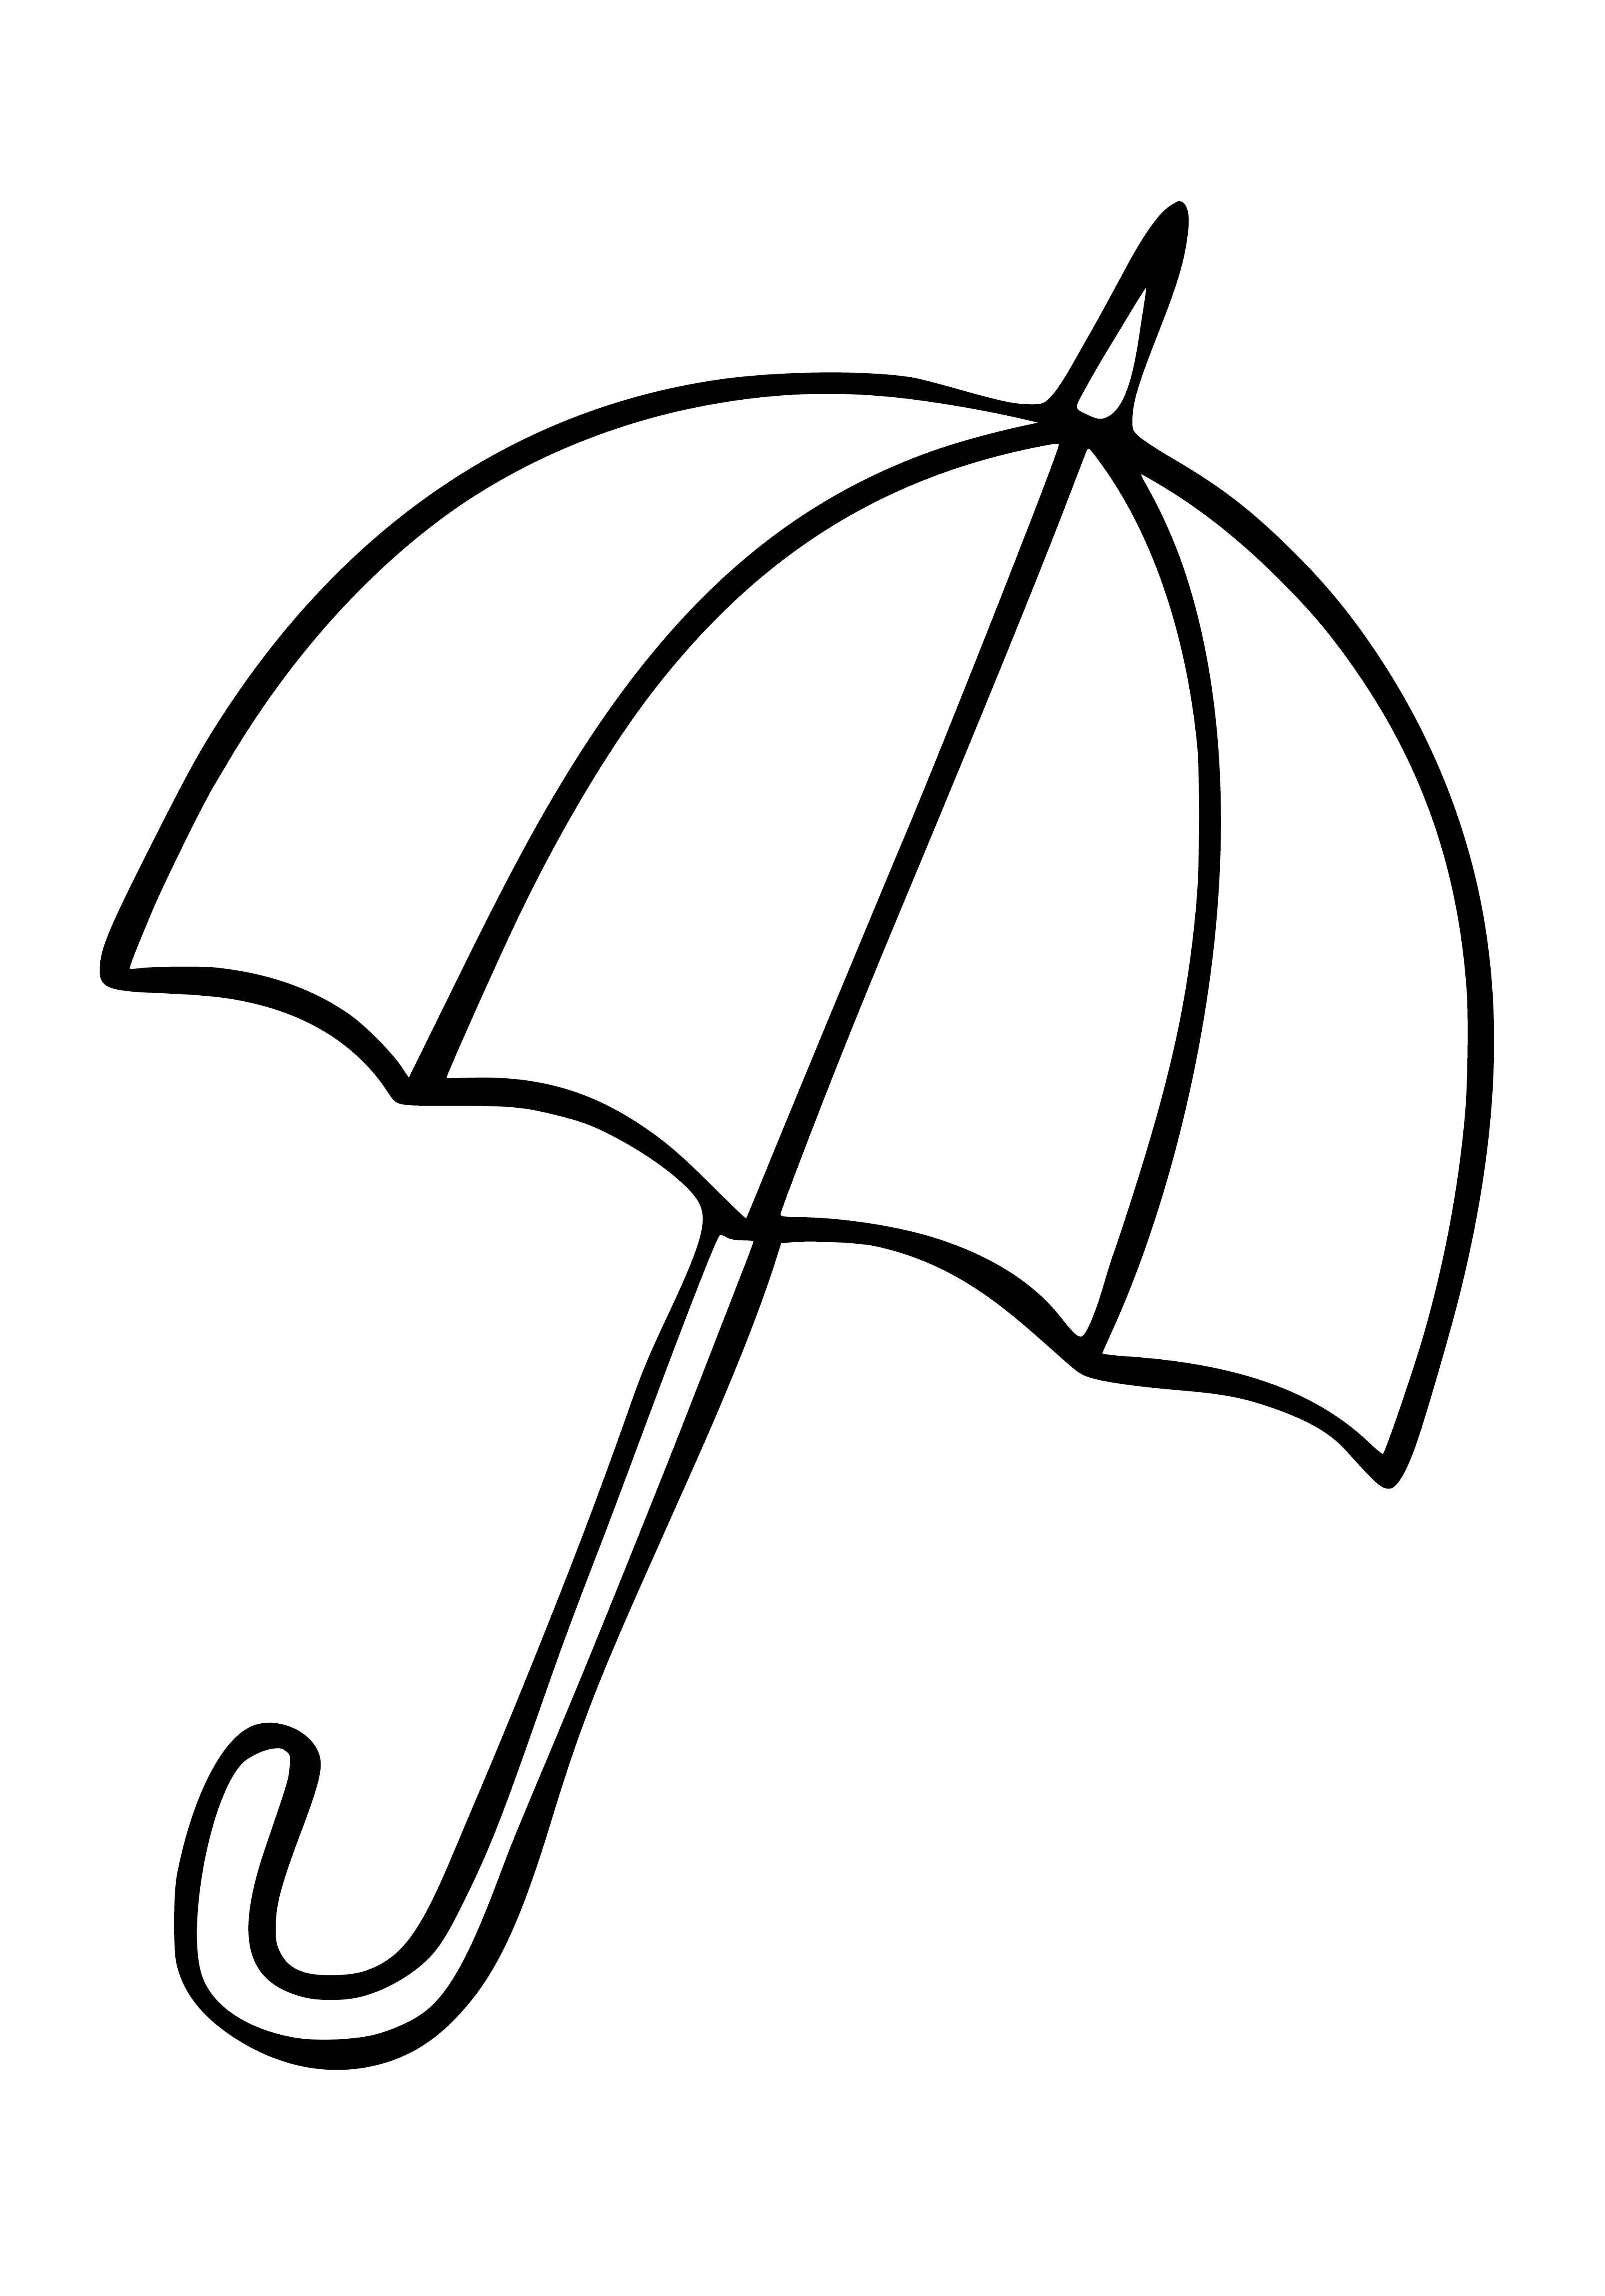 Распечатать зонтик. Раскраска зонтик. Зонт раскраска. Зонтик раскраска для детей. Раскраскаидля малышей.